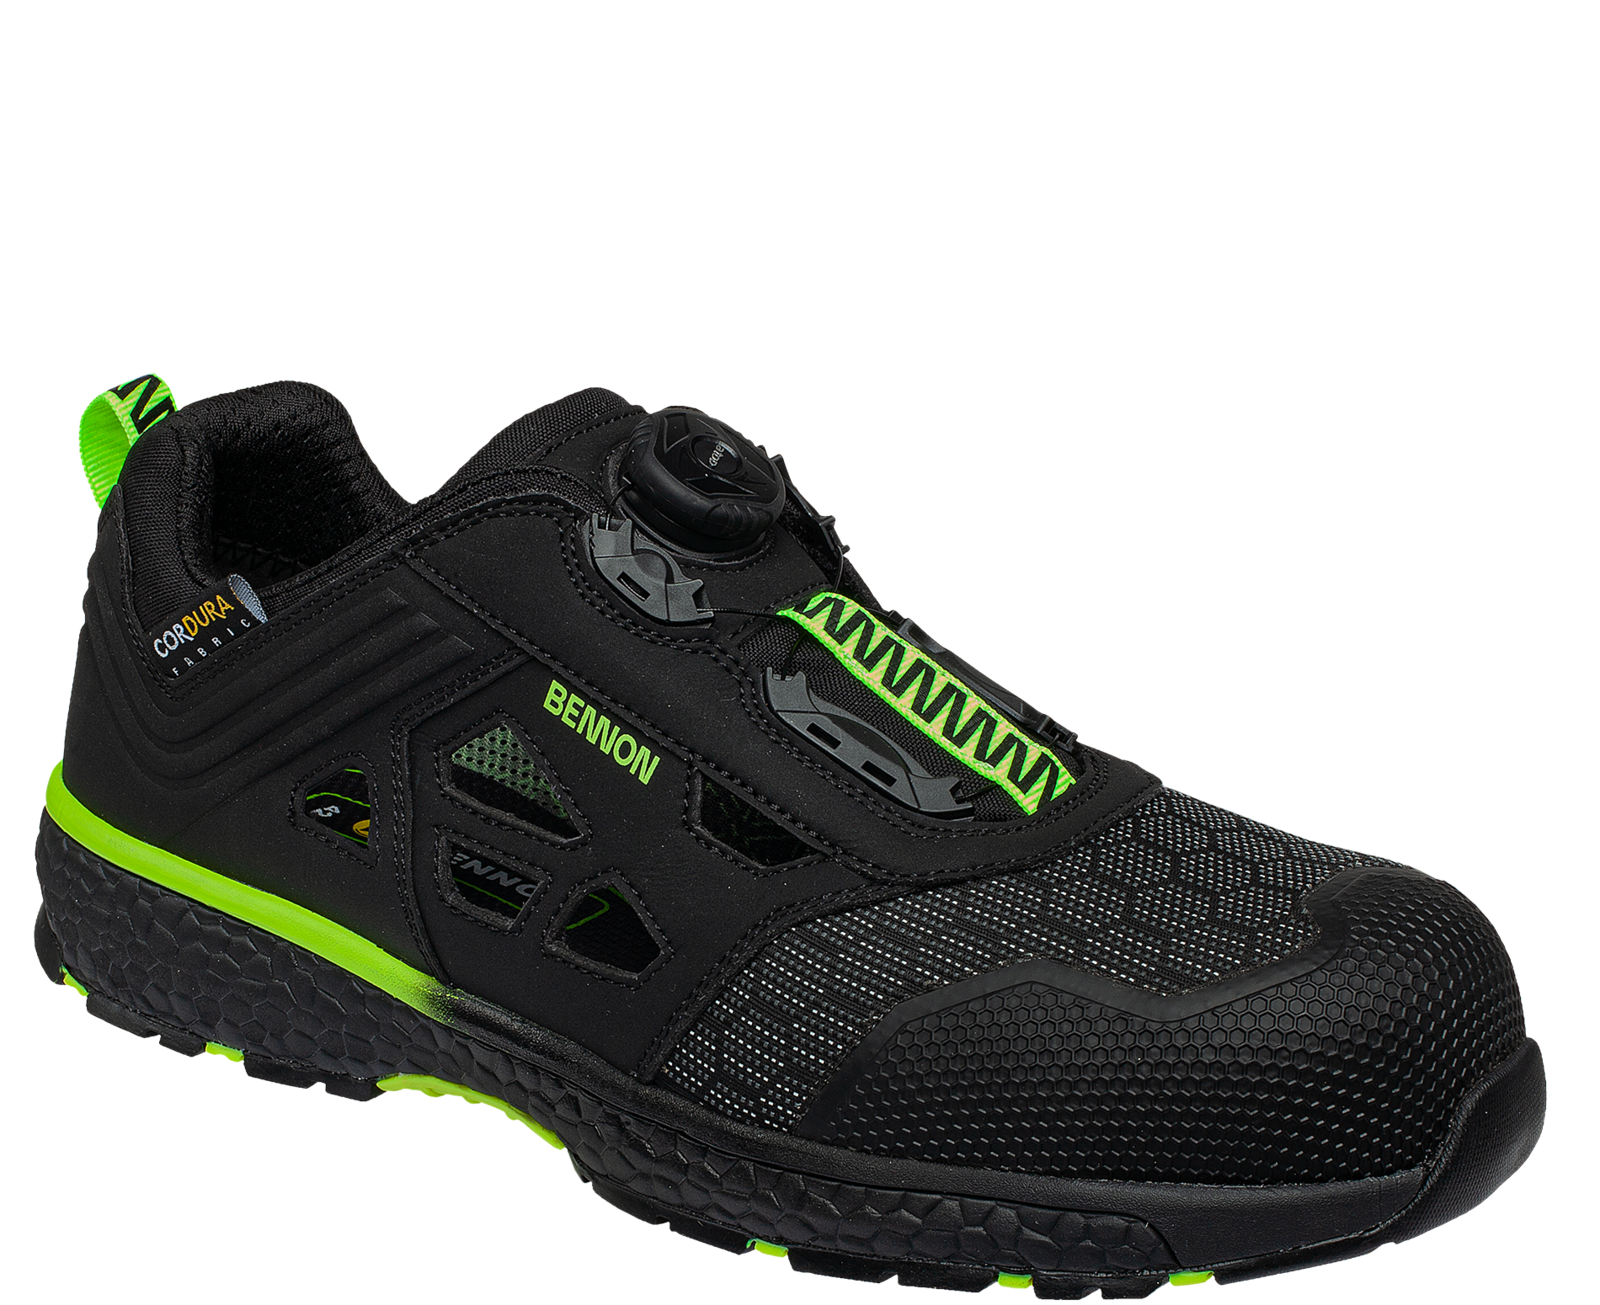 Bezpečnostné sandále Bennon Predator S1P ESD - veľkosť: 44, farba: čierna/zelená